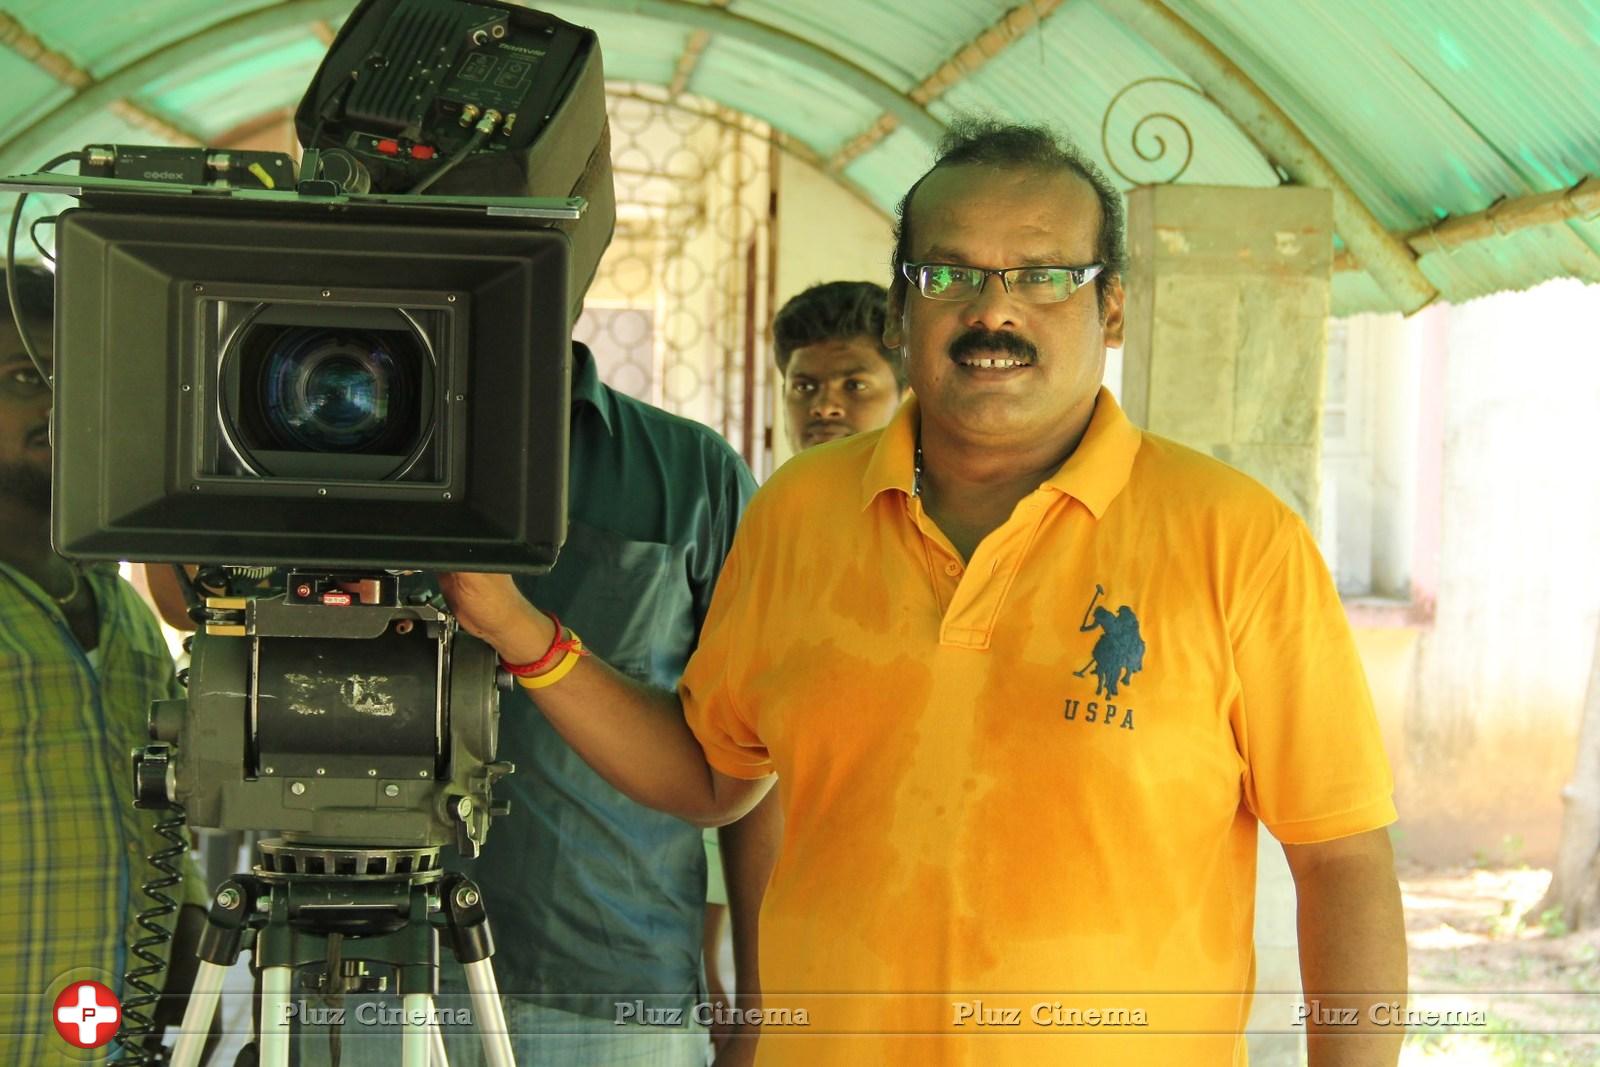 A. Venkatesh - Sandamaarutham Movie Working Stills | Picture 806232